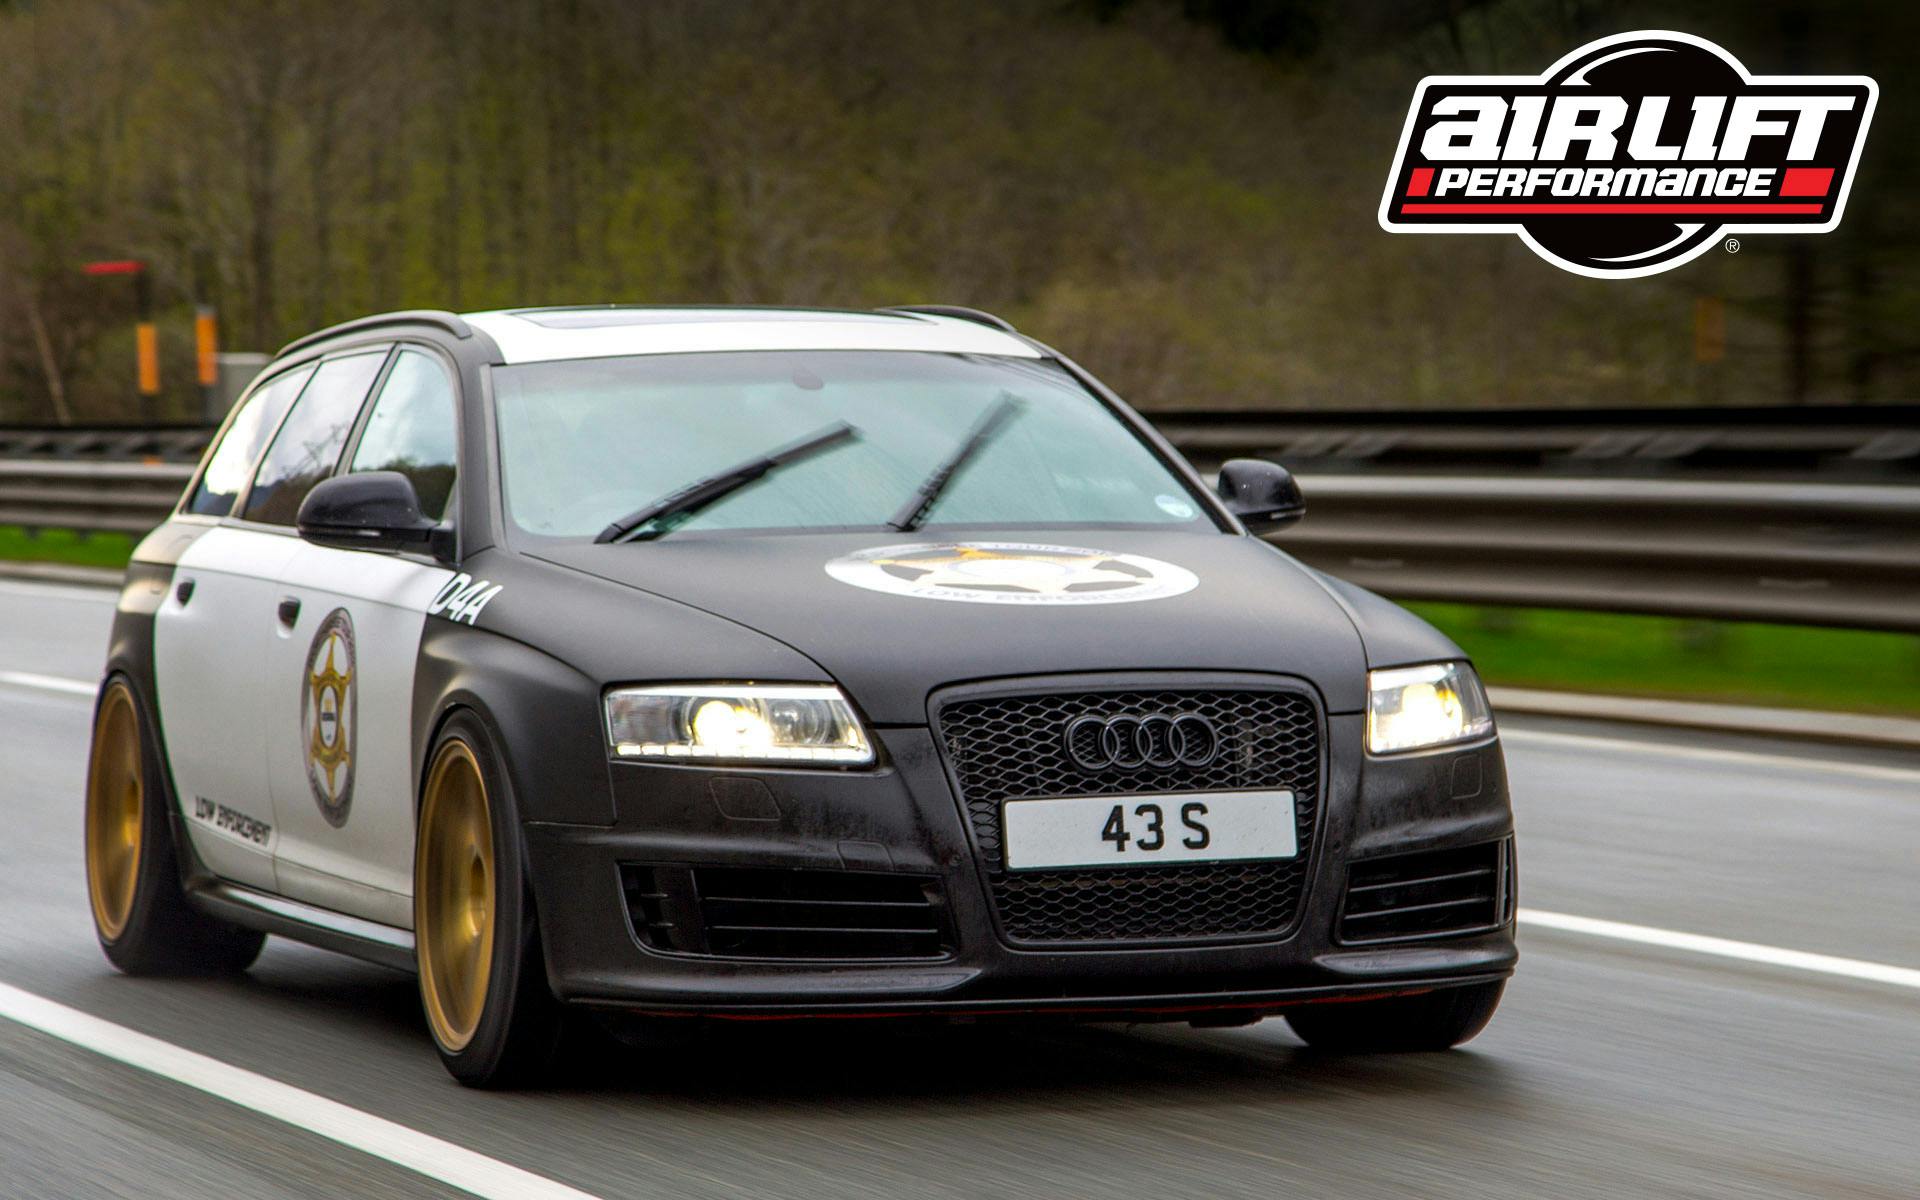 Design4 Automotive &#039;Low Enforcement&#039; Police Audi RS6 on Air Lift Performance